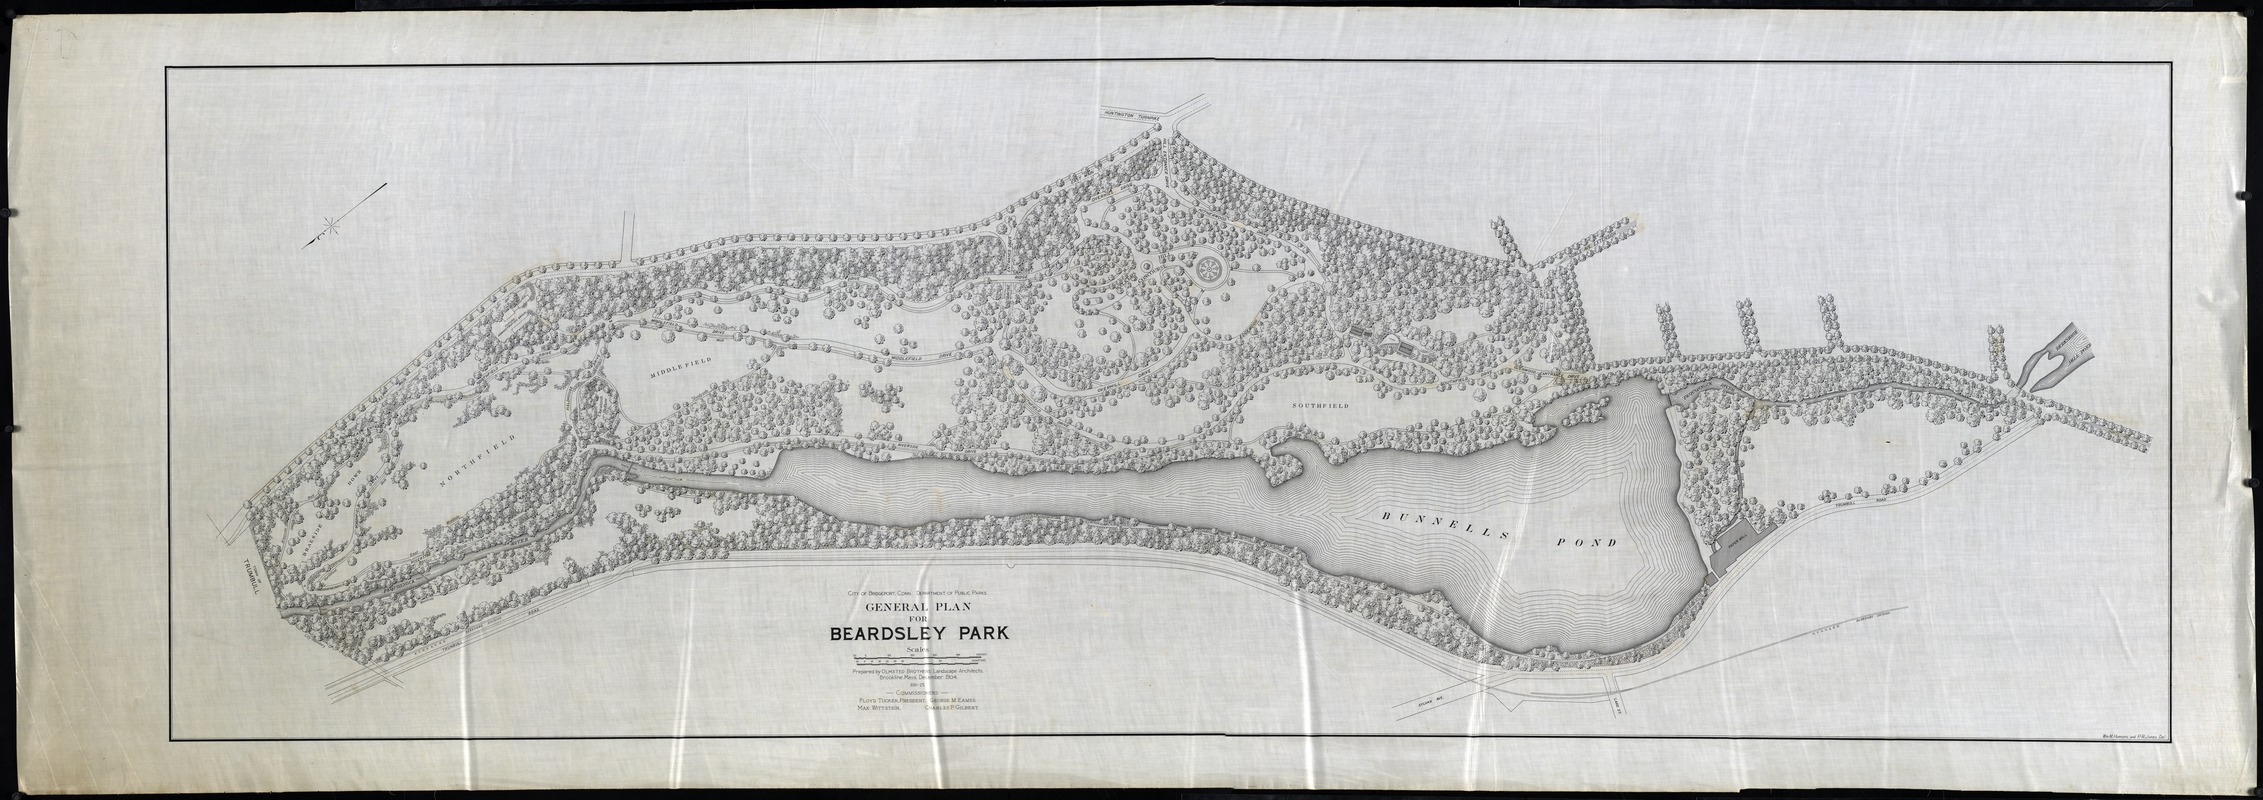 CITY OF BRIDGEPORT, PARK COMMISSION; DEPARTMENT OF PUBLIC PARKS; GENERAL PLAN FOR BEARDSLEY PARK; SCALE 80'=1"